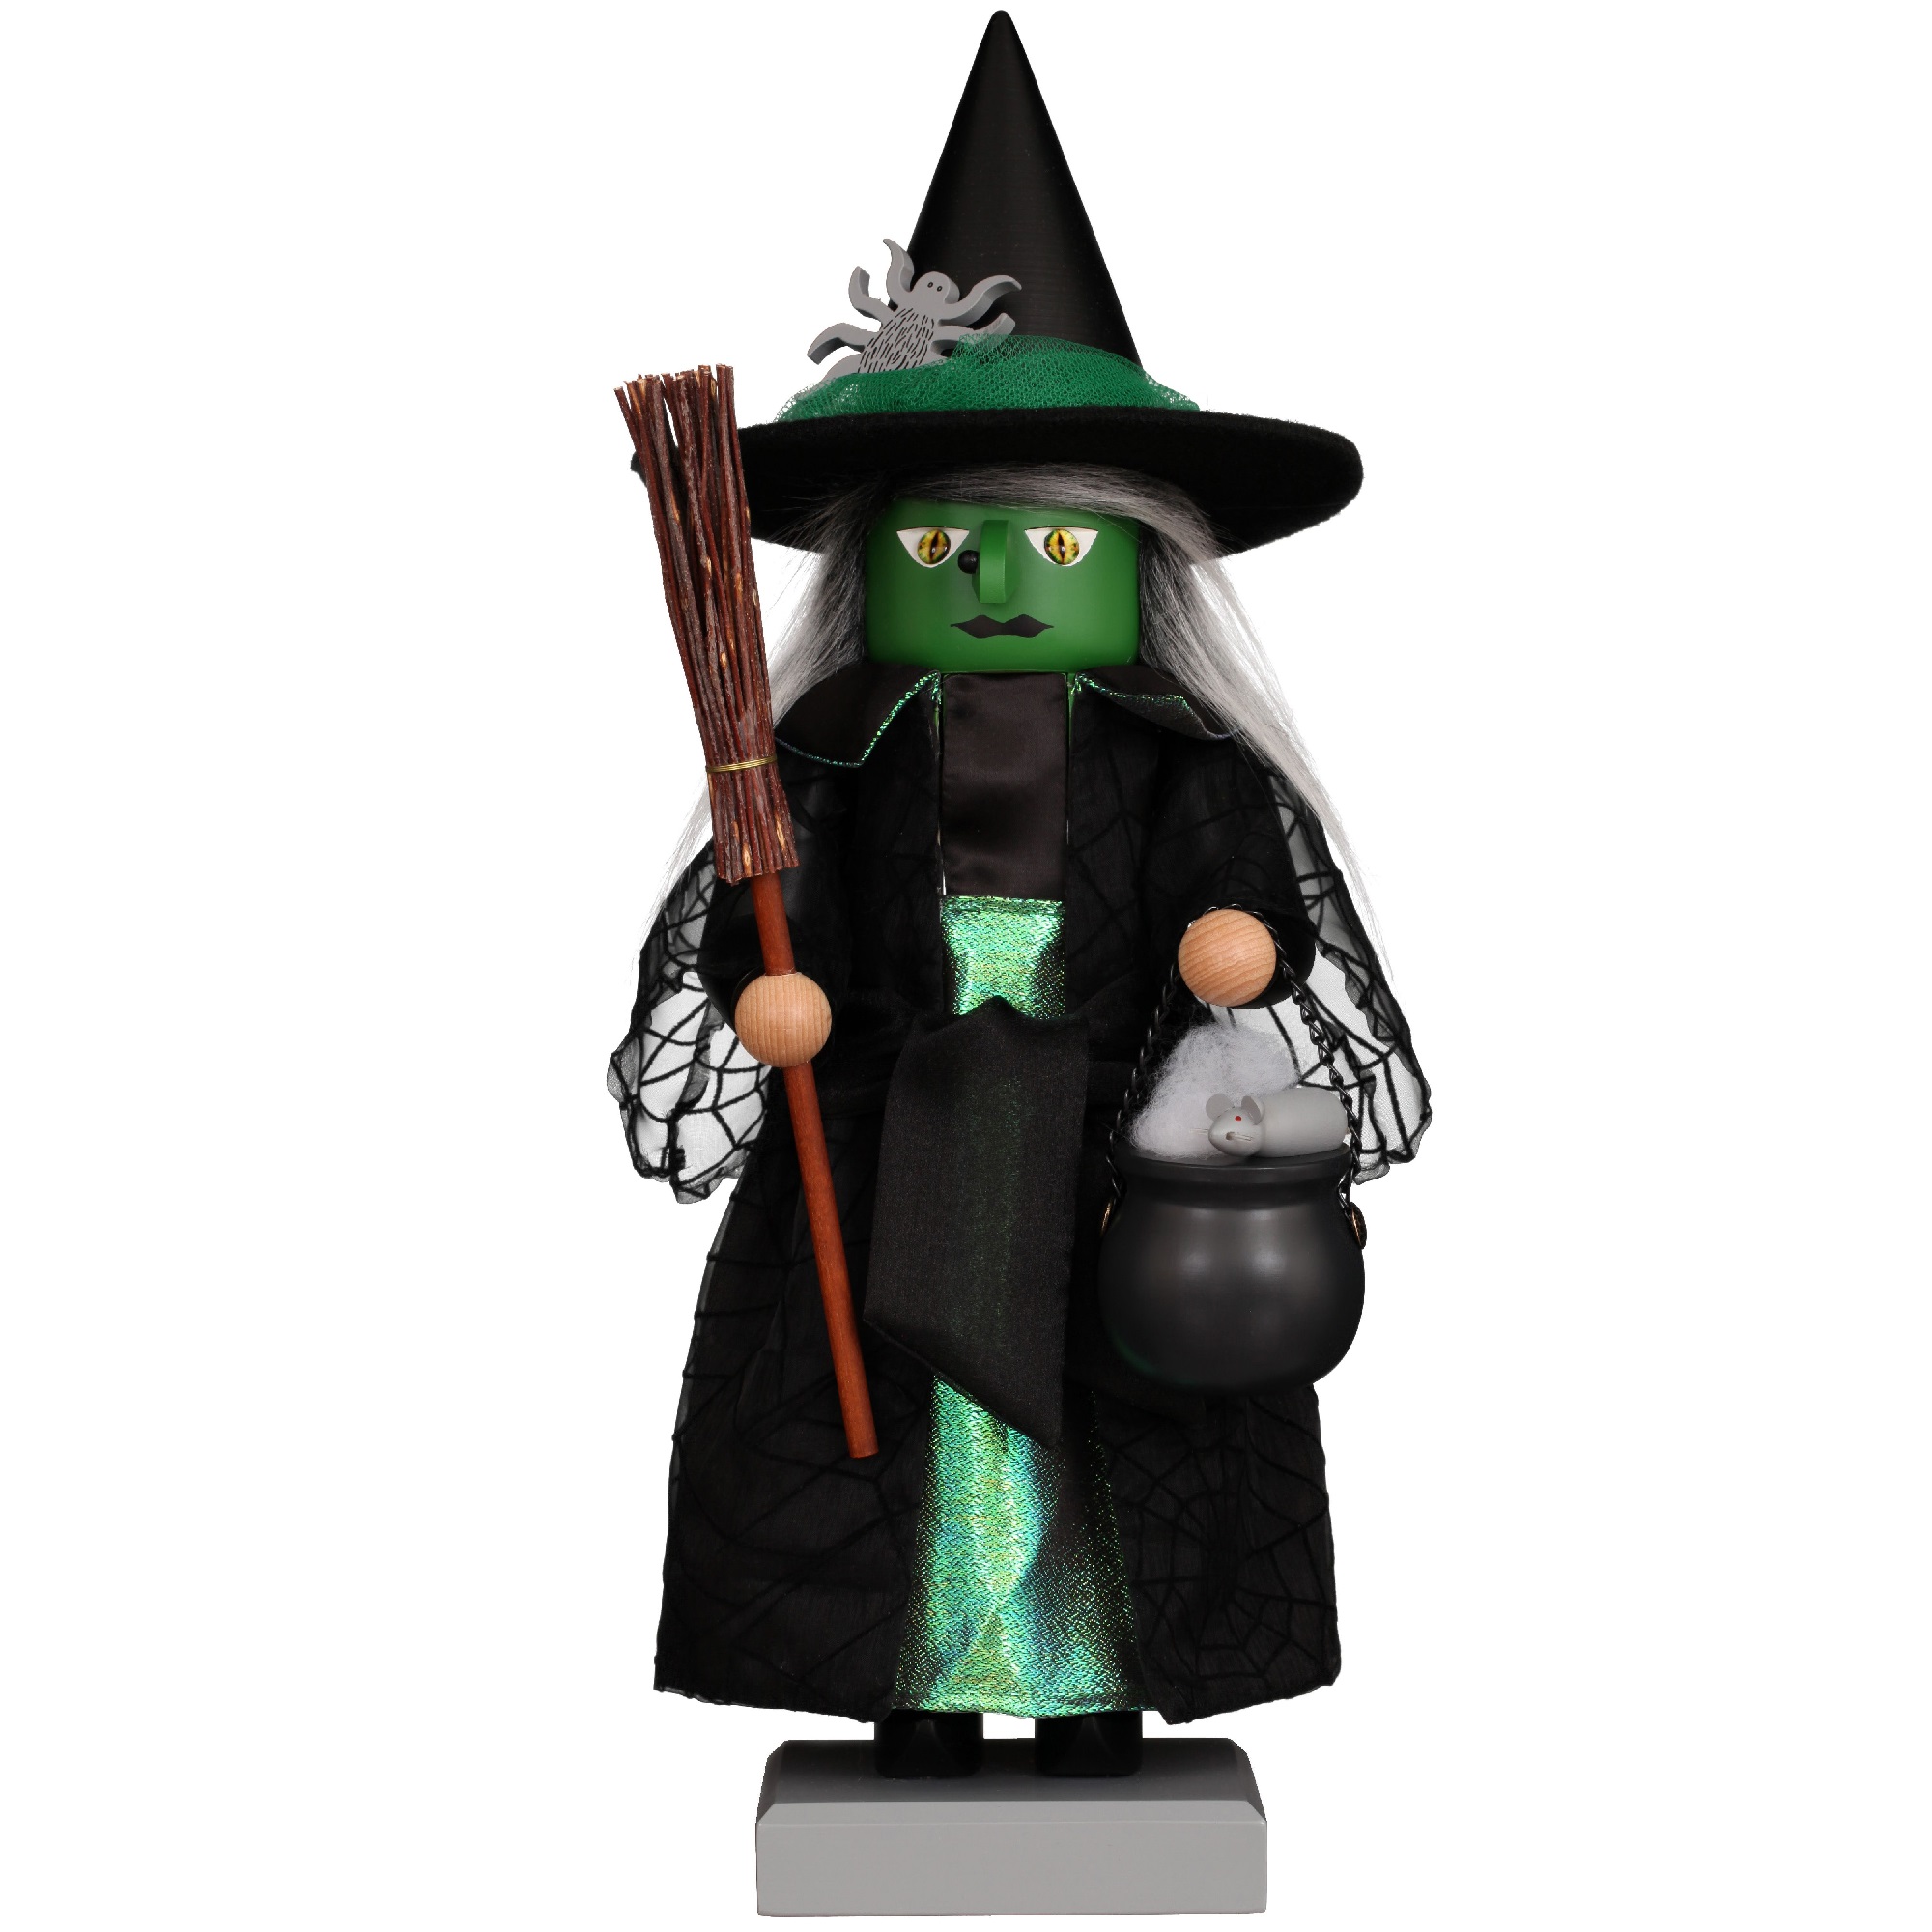 Alexander 20.5” Green Halloween Witch Handmade Wooden Nutcracker